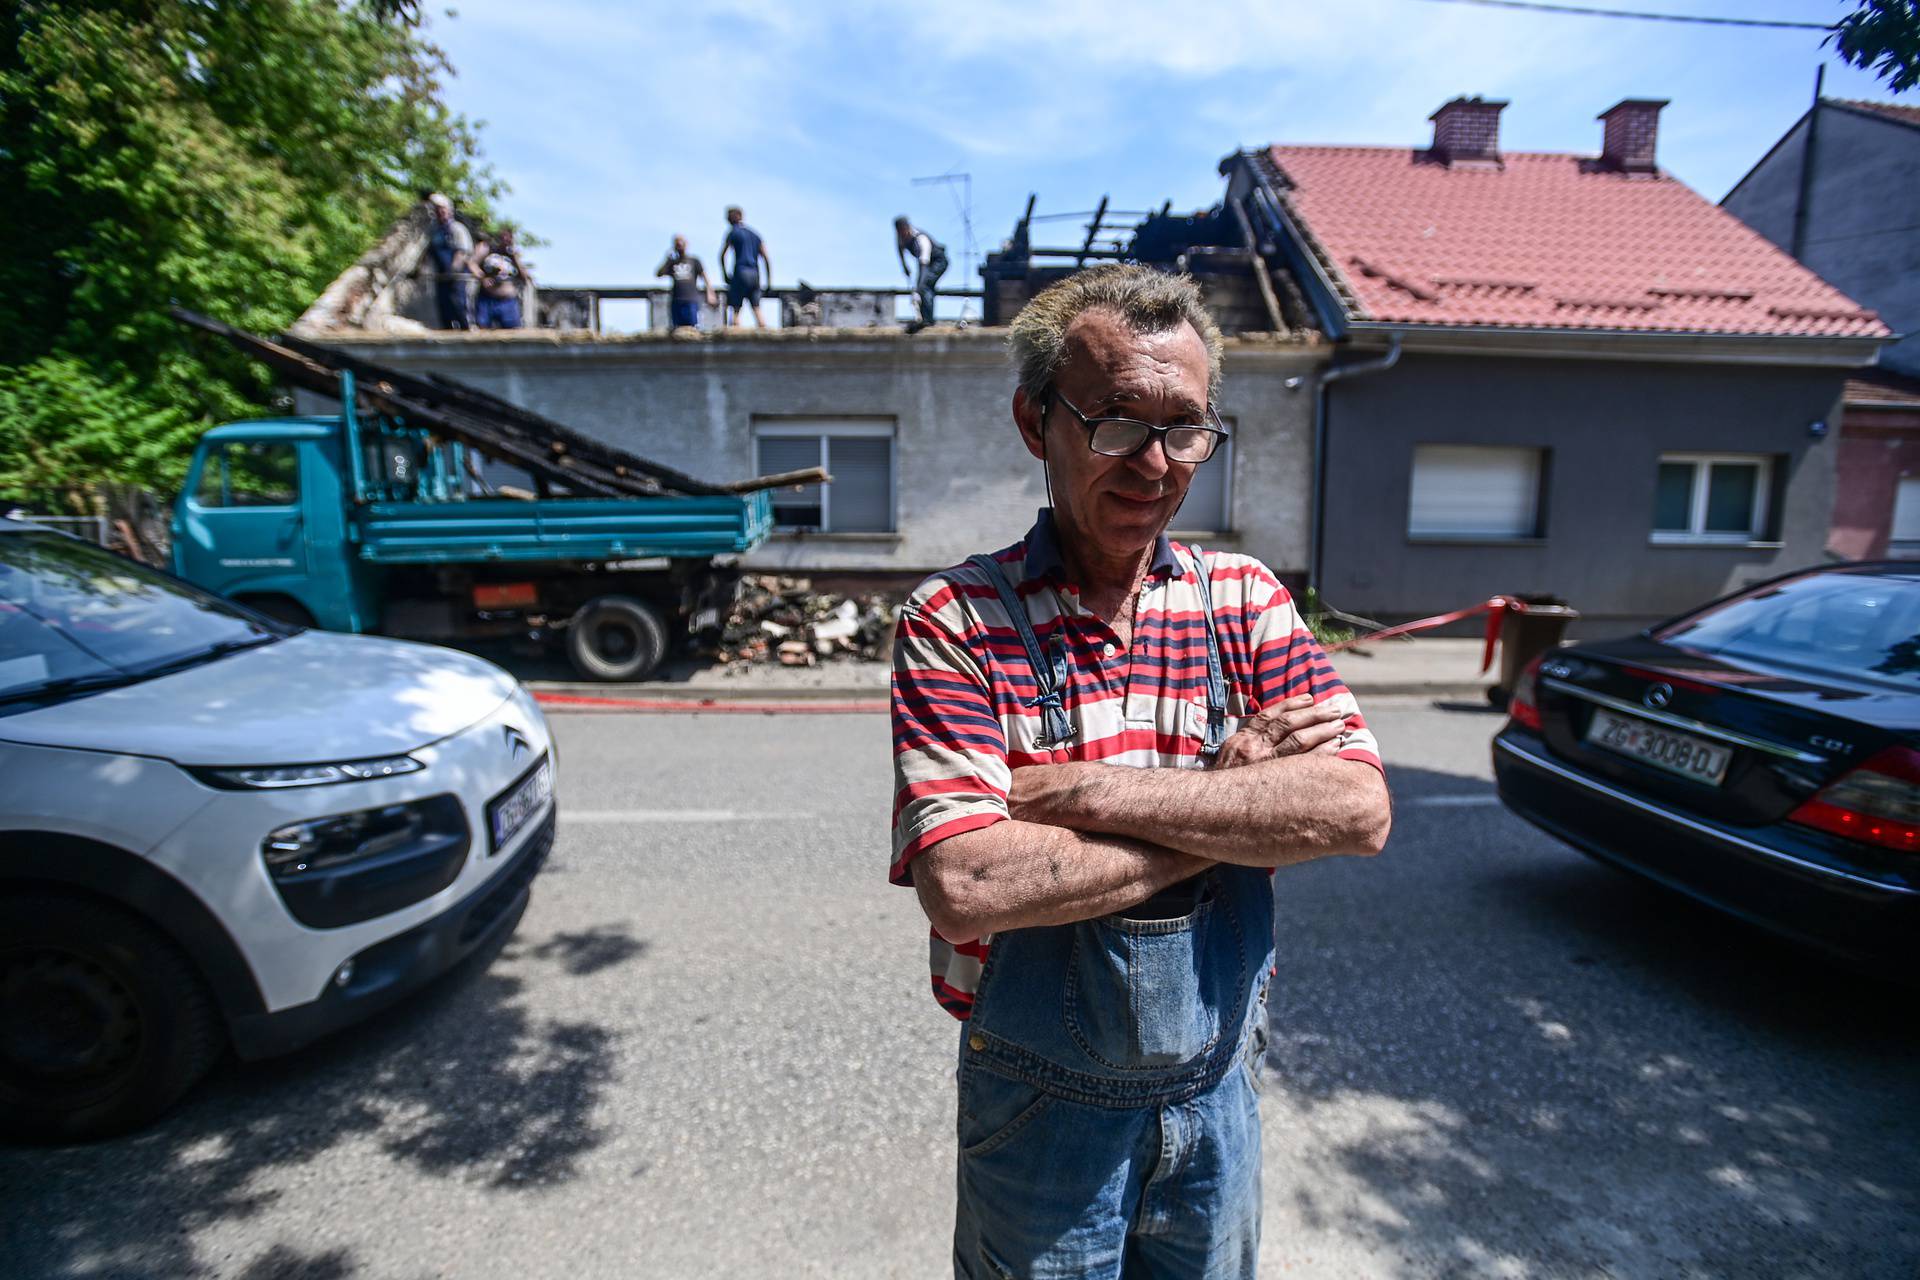 Zagreb: U Ulici Barutanski jarak izgorilo je krovište kuće